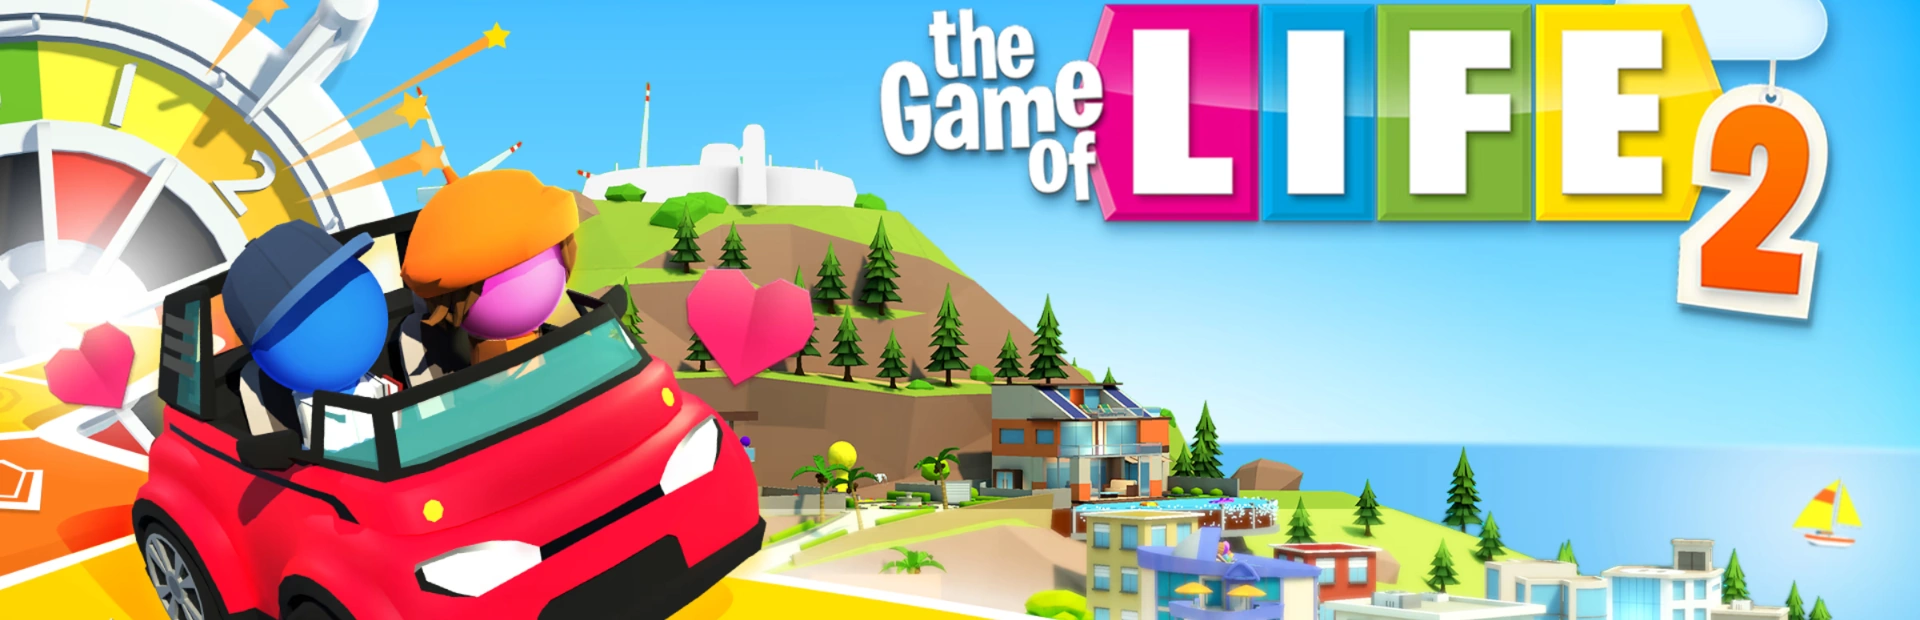 دانلود بازی The Game of Life 2 برای کامپیوتر | گیمباتو